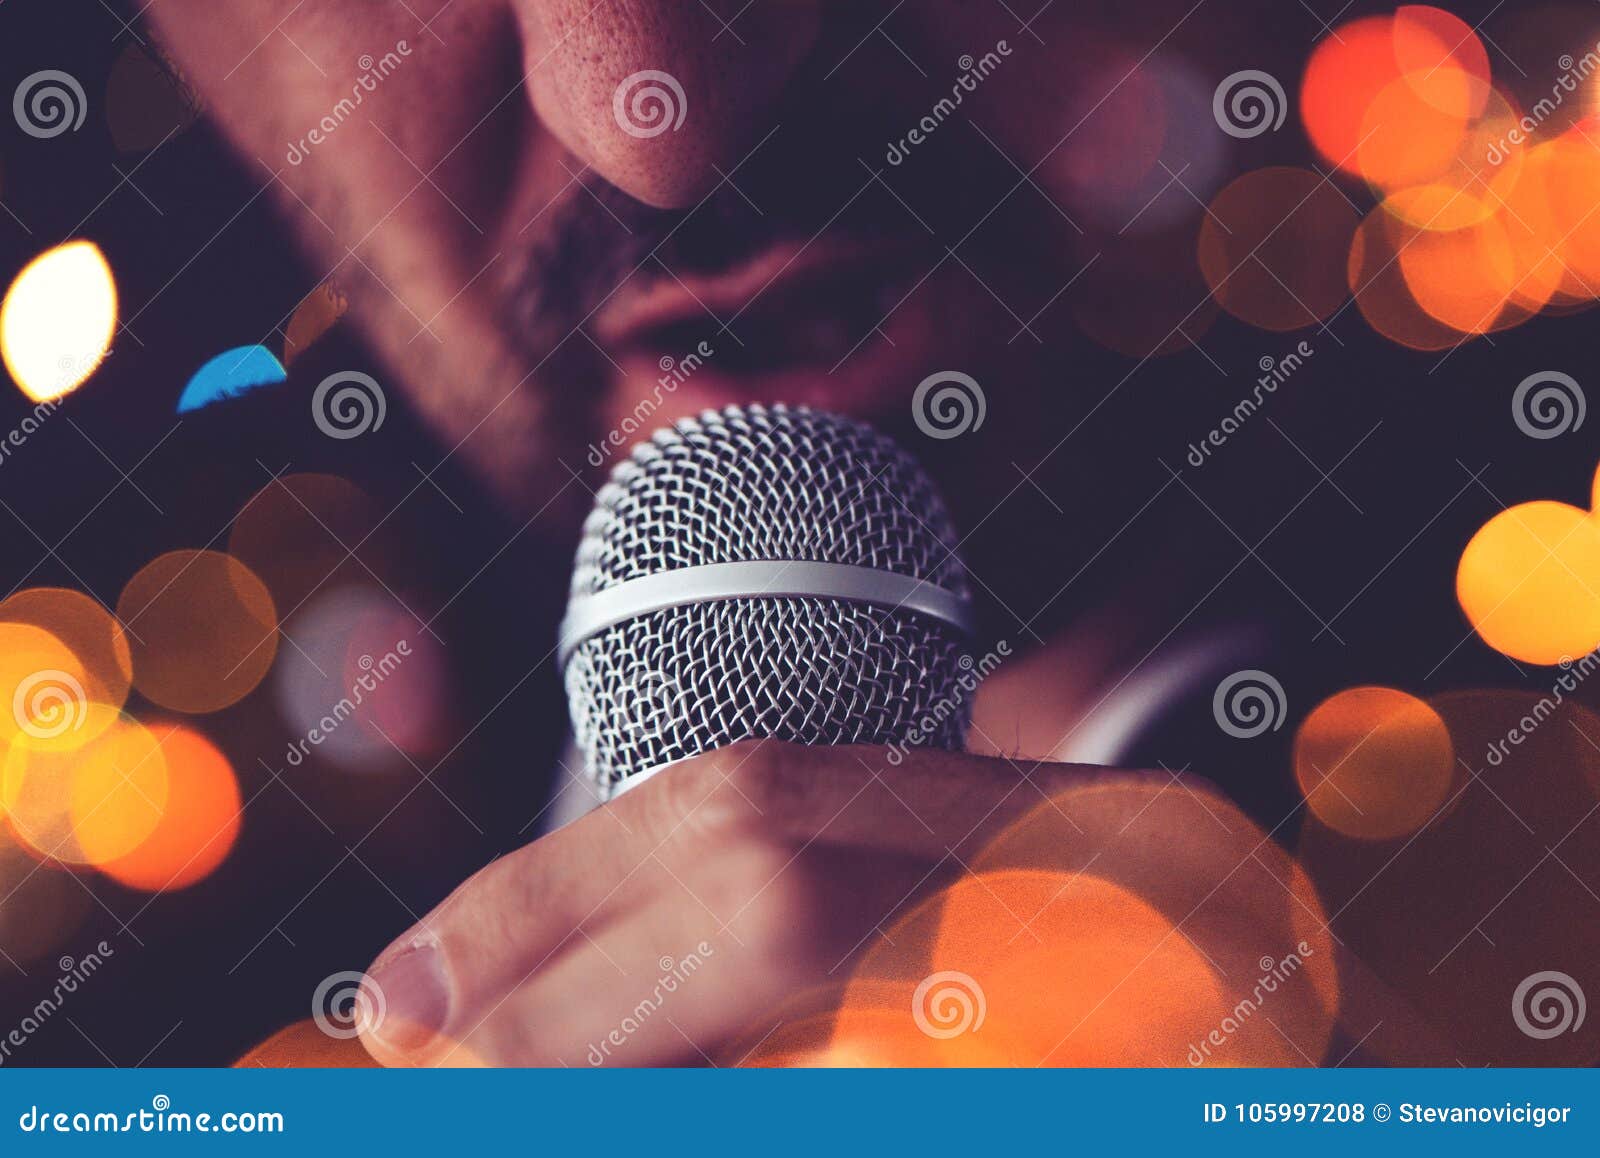 man sings karaoke in a bar